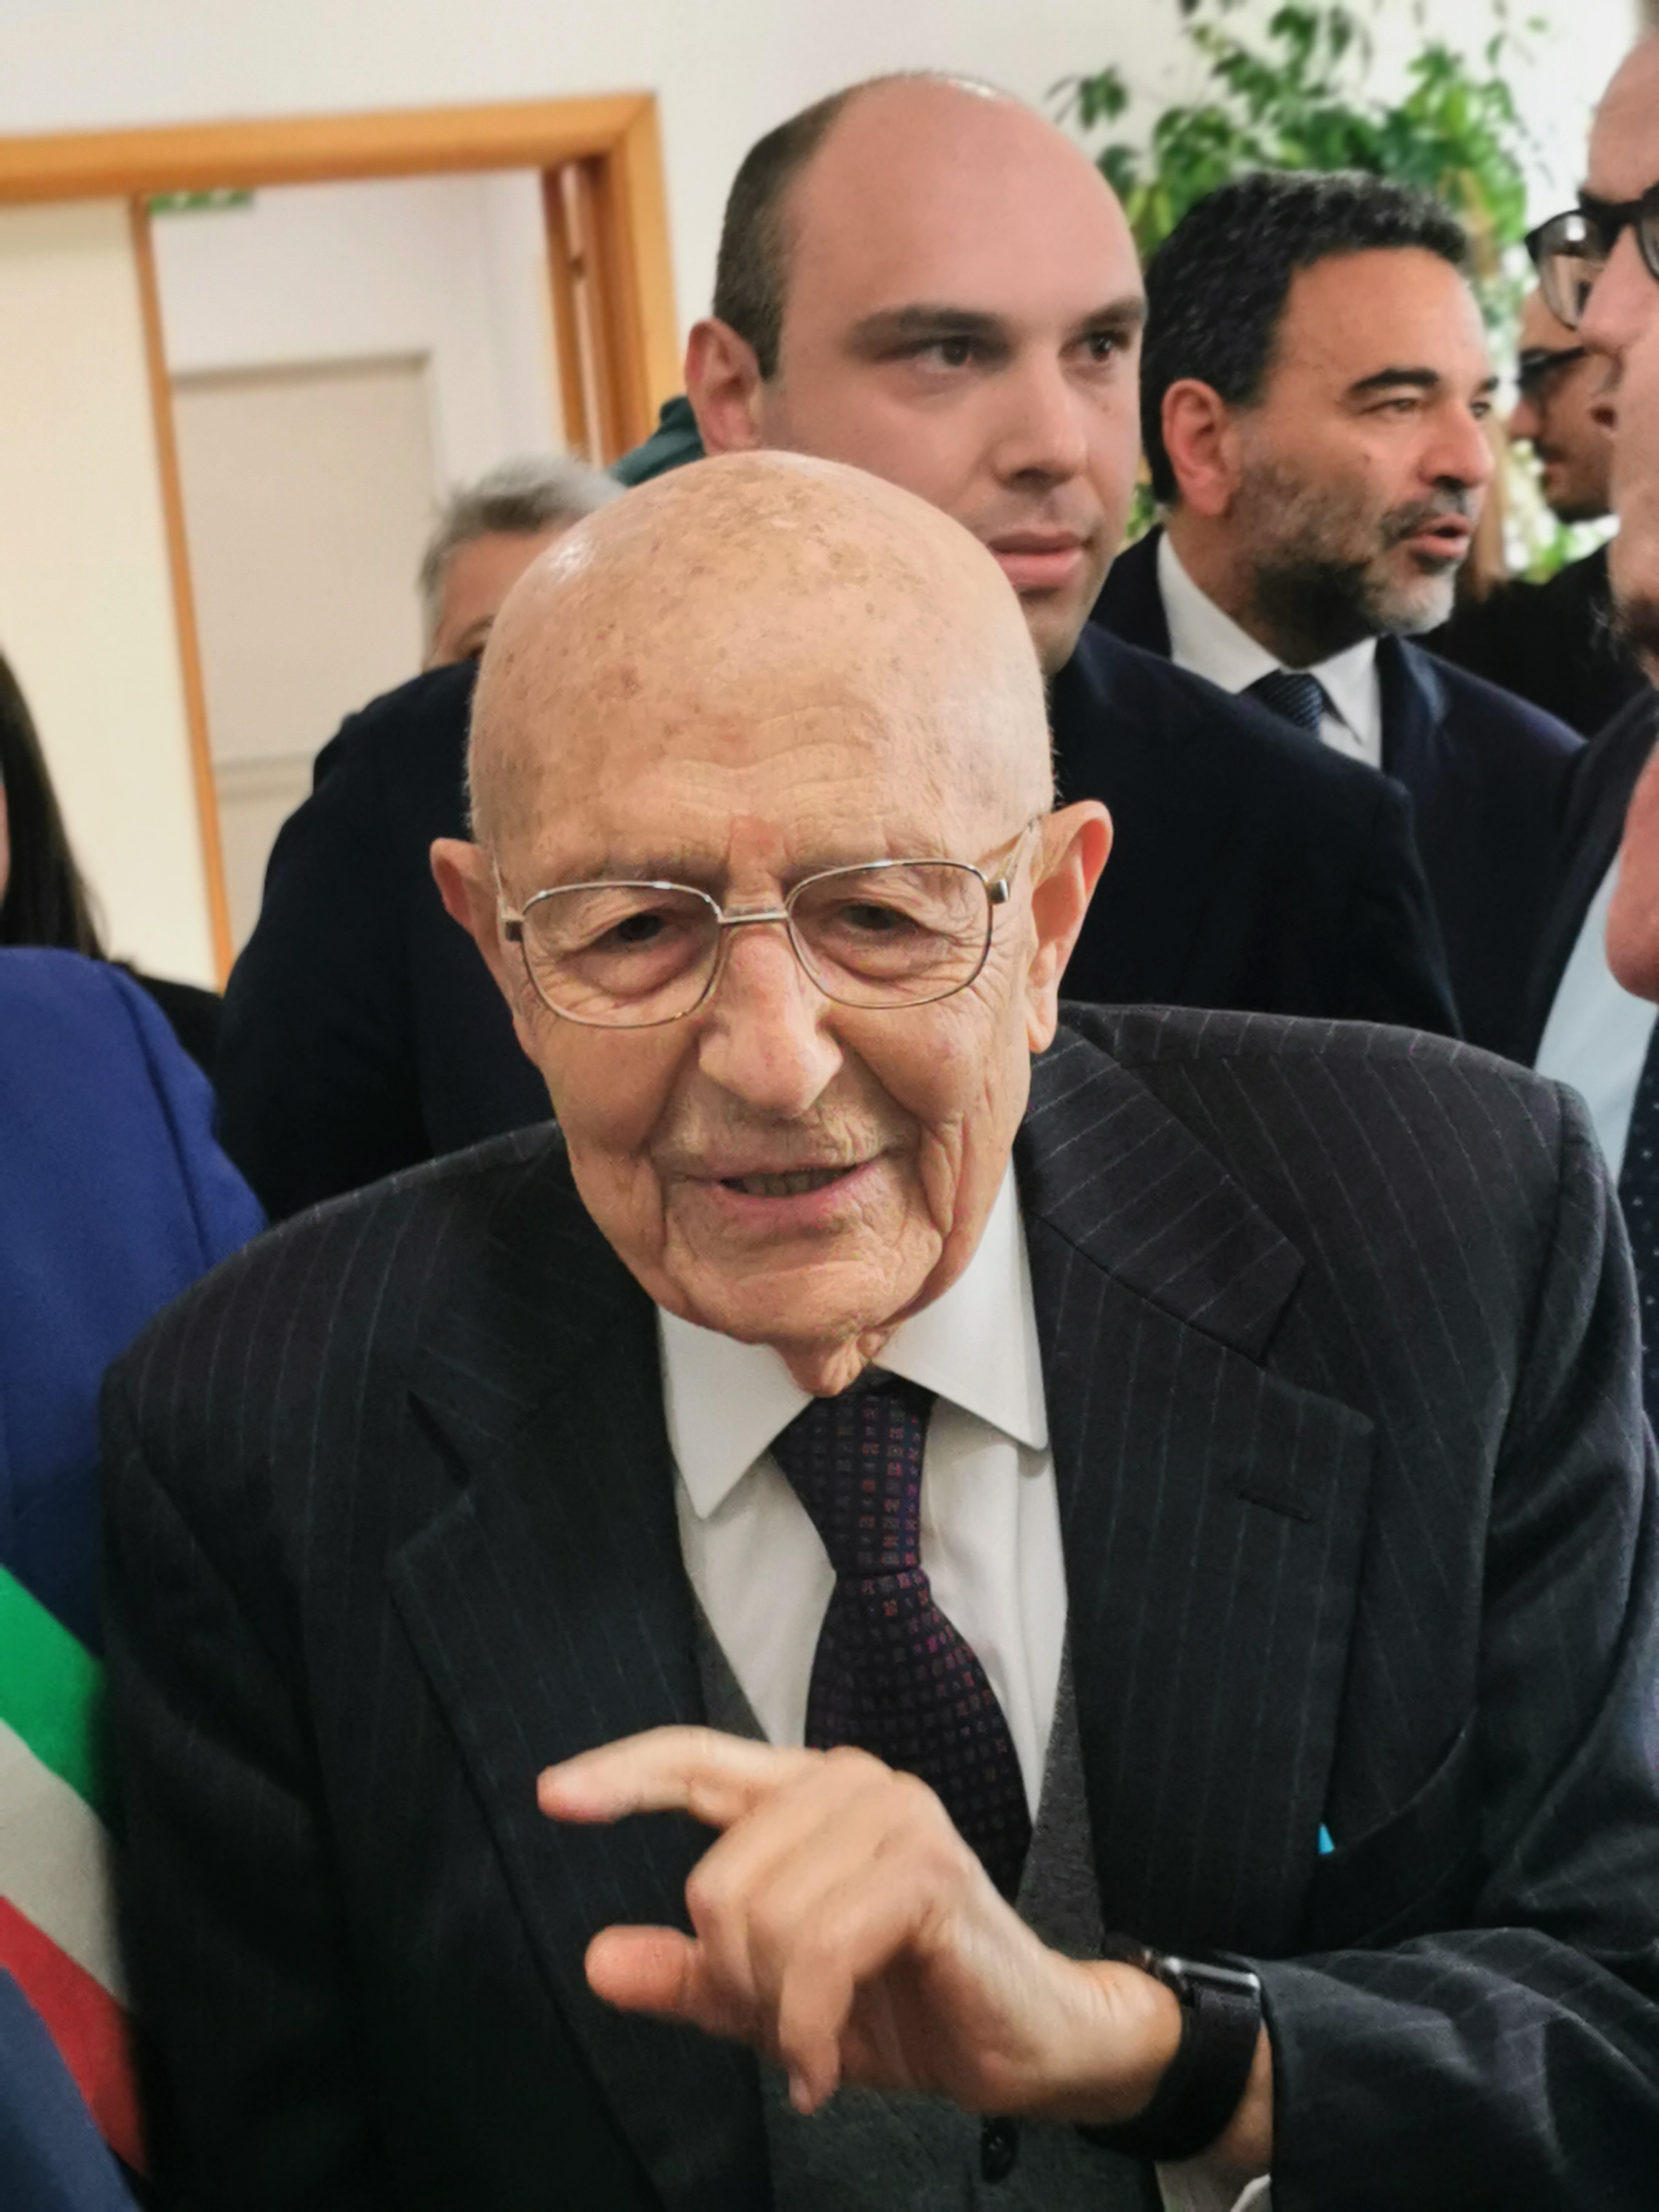 Cittadinanza onoraria a Sabino Cassese orgoglio  di Atripalda tra grande partecipazione e interrogativi sull